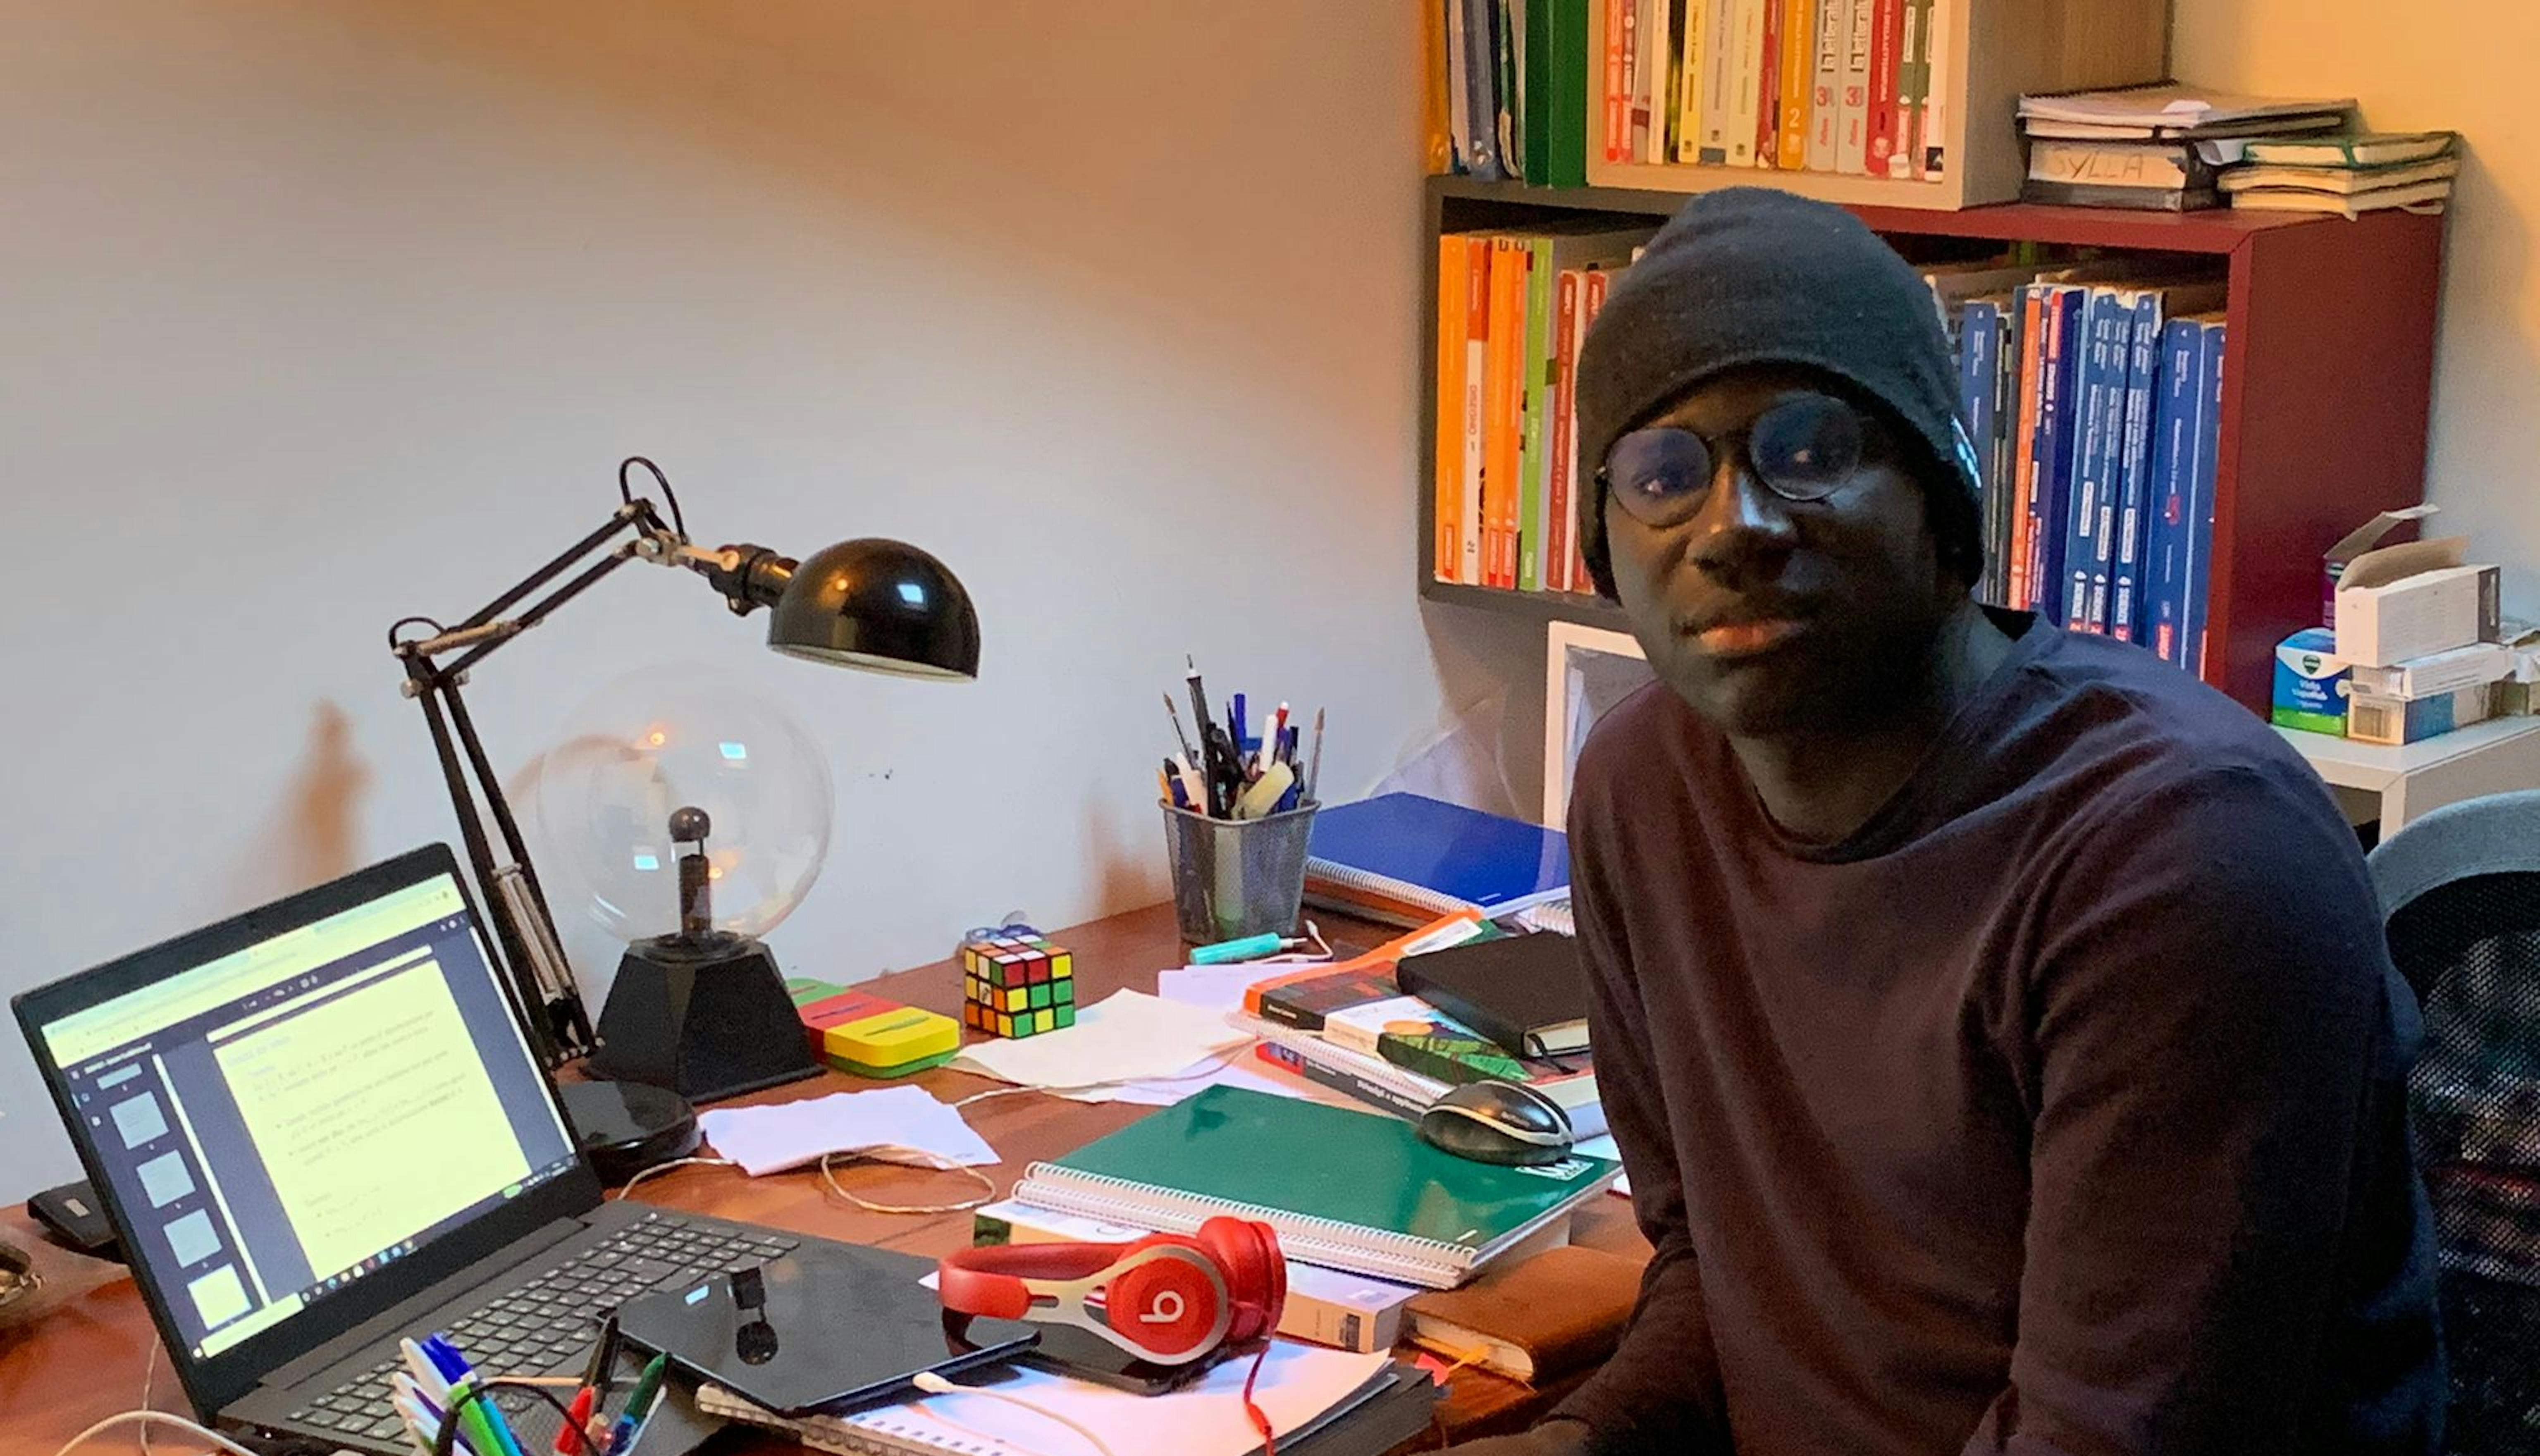 Almamy studia nella sua stanza, nella casa di Milano in cui vive con la sua famiglia affidataria